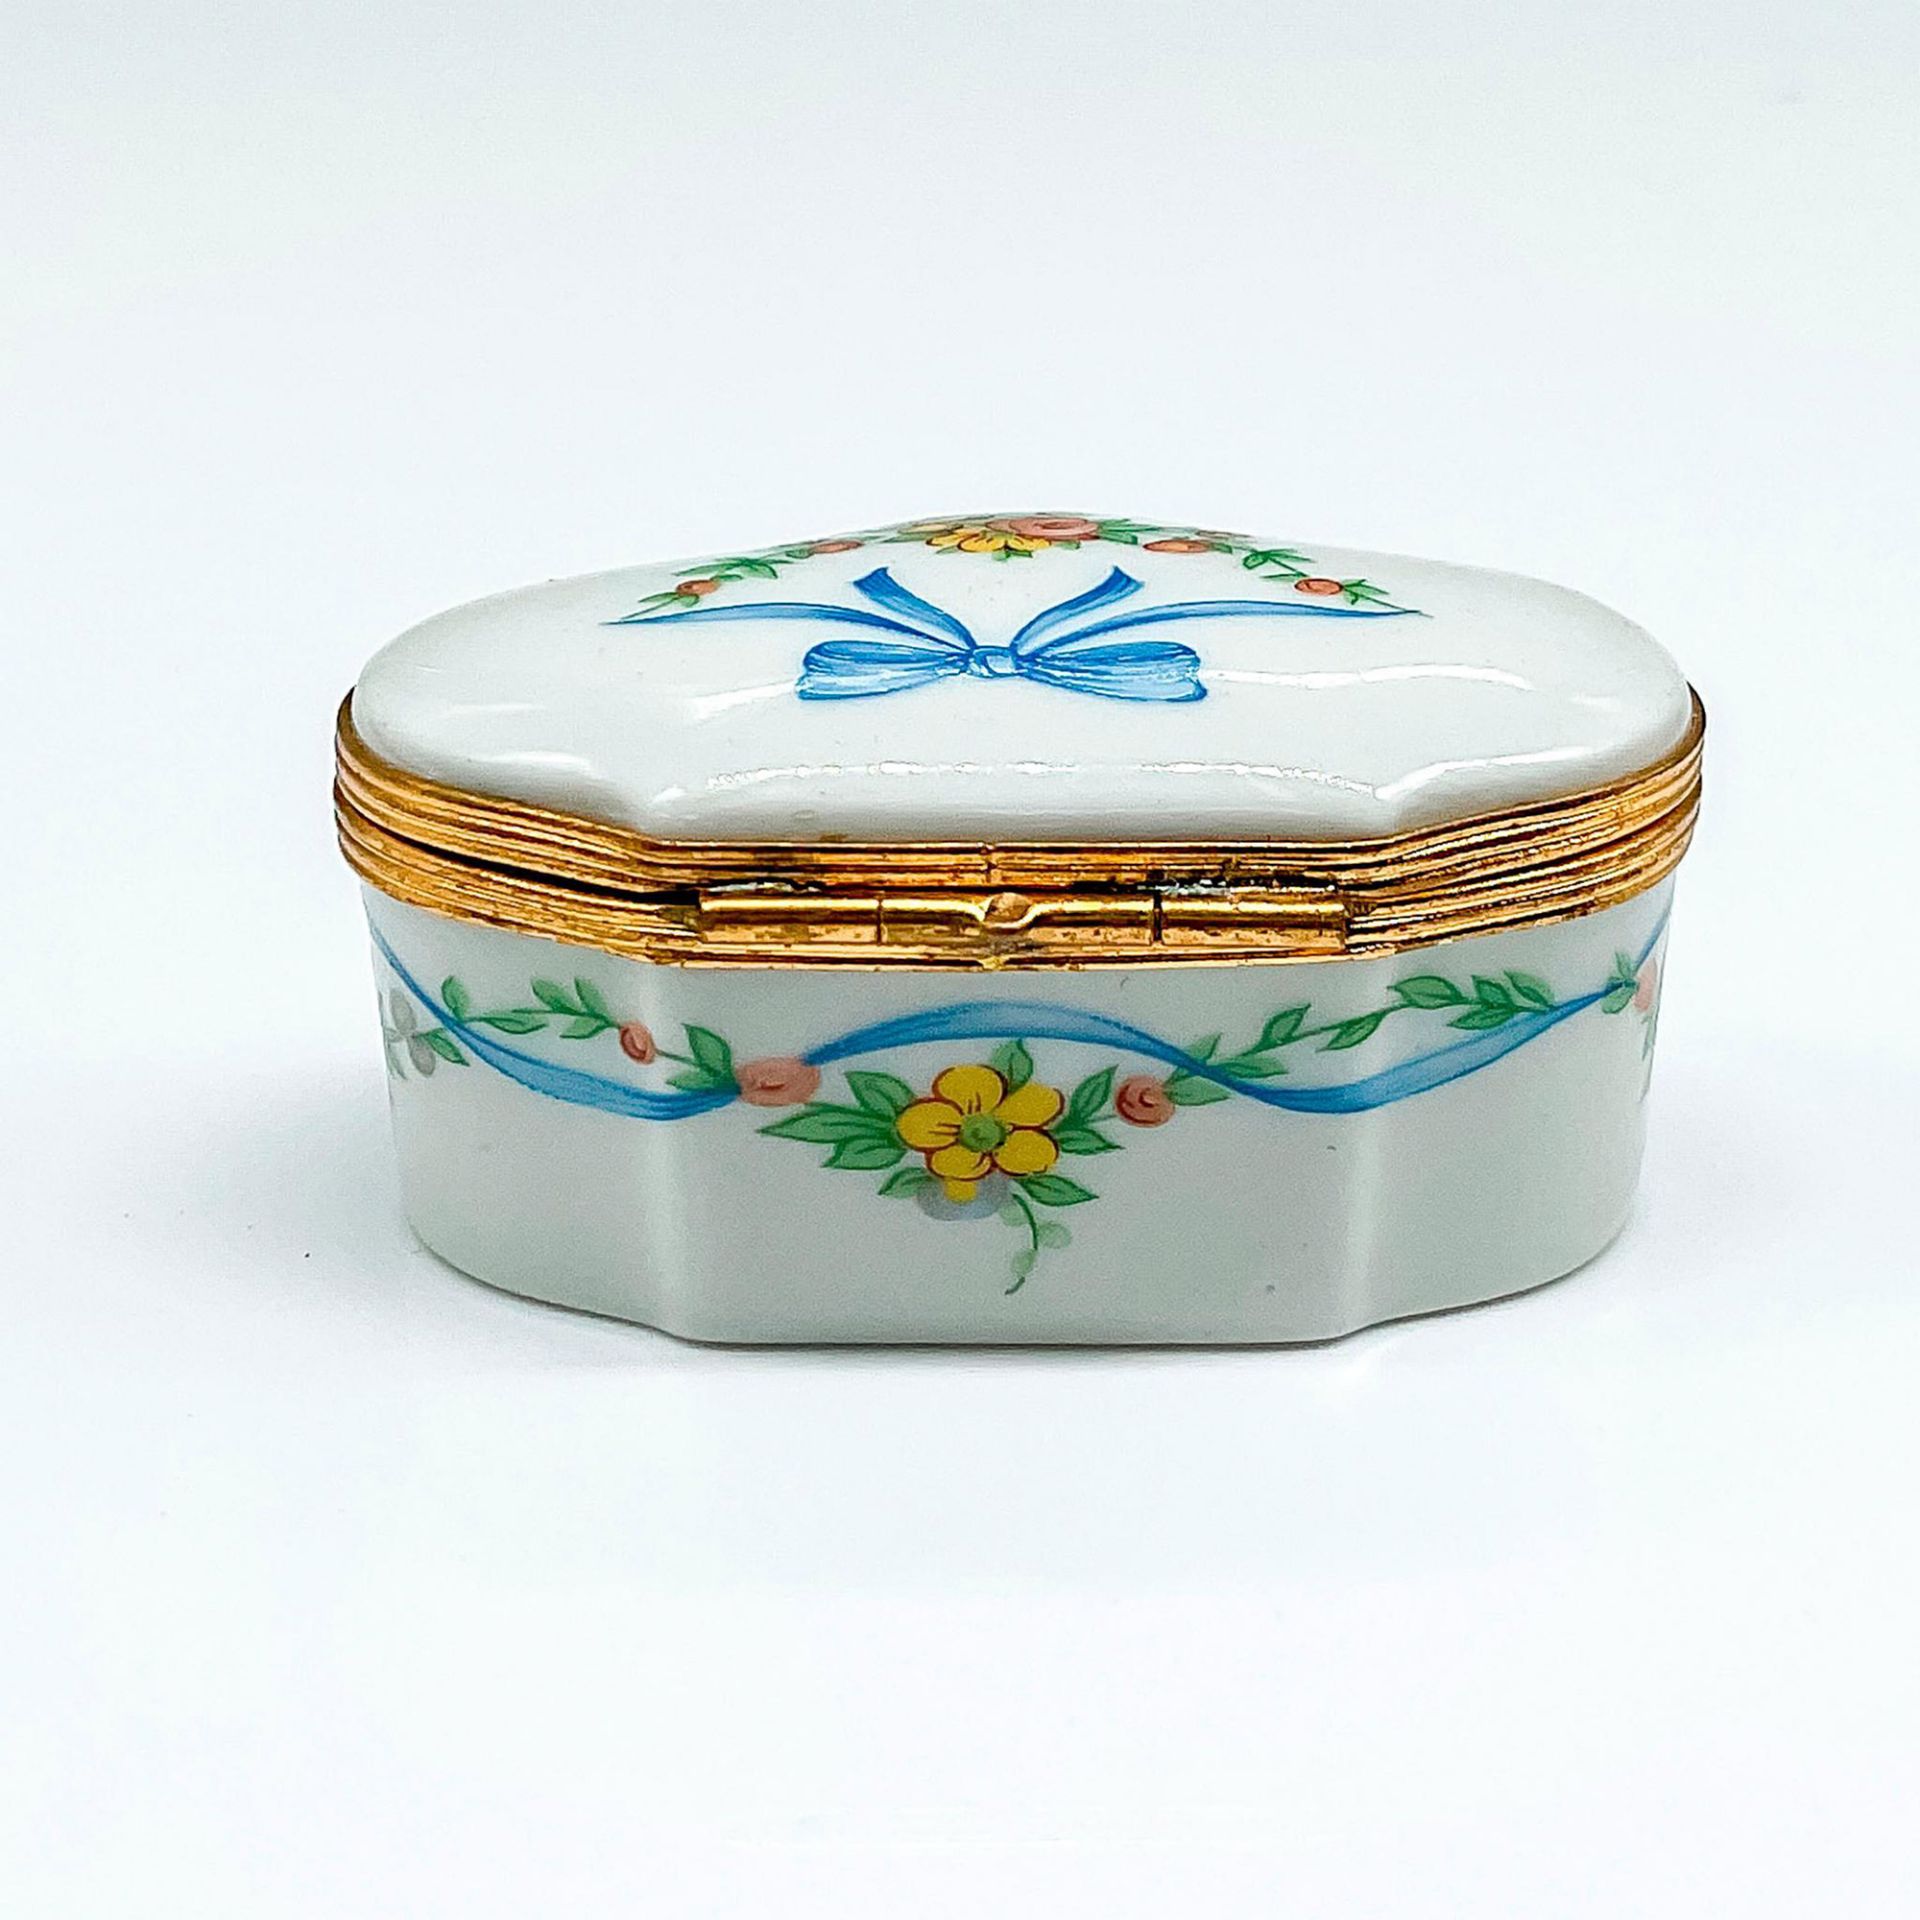 Limoges Artoria Porcelain Trinket Box - Image 2 of 4